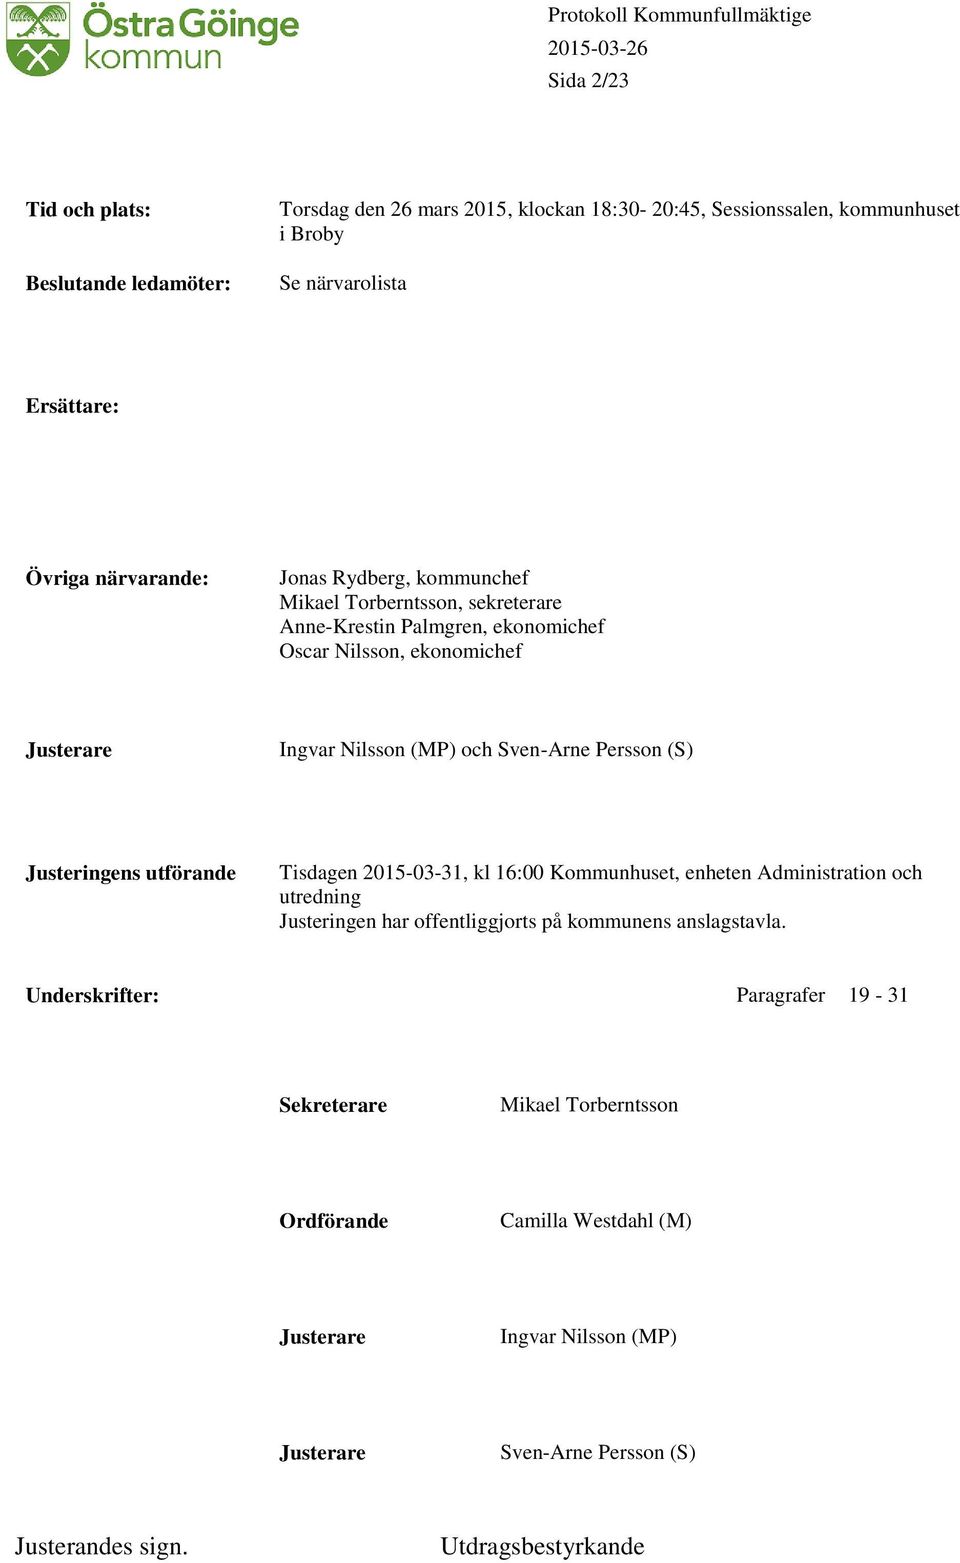 Sven-Arne Persson (S) Justeringens utförande Tisdagen 2015-03-31, kl 16:00 Kommunhuset, enheten Administration och utredning Justeringen har offentliggjorts på kommunens anslagstavla.